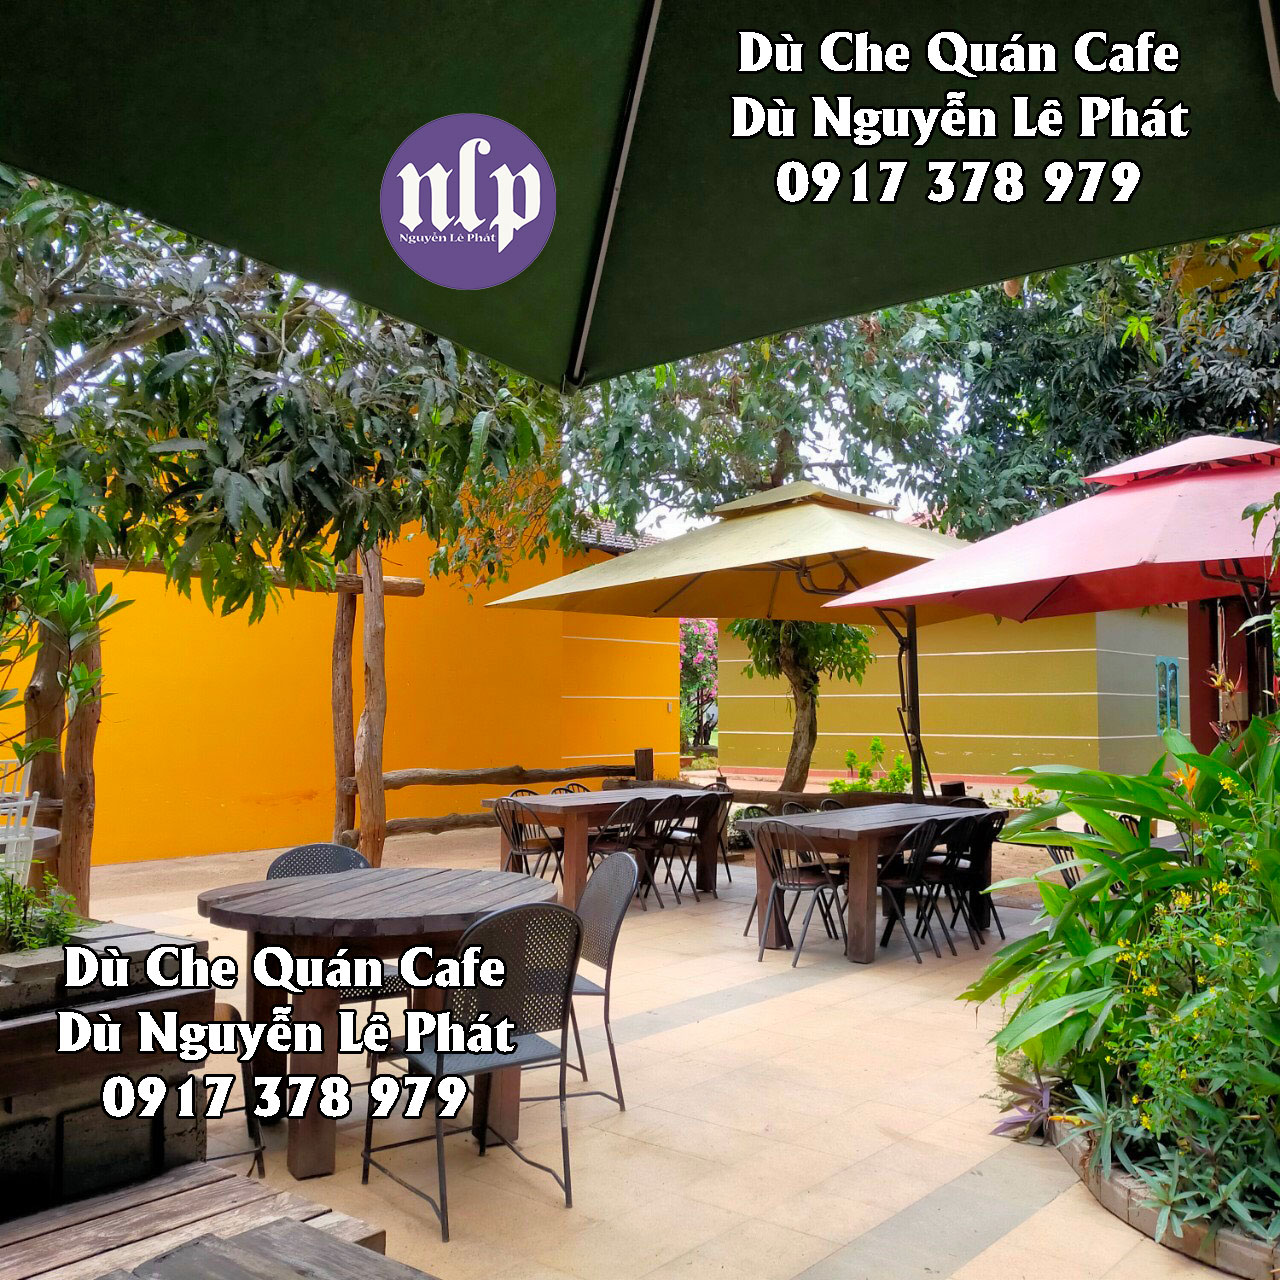 Bán Dù Che Nắng Quán Cafe giá rẻ